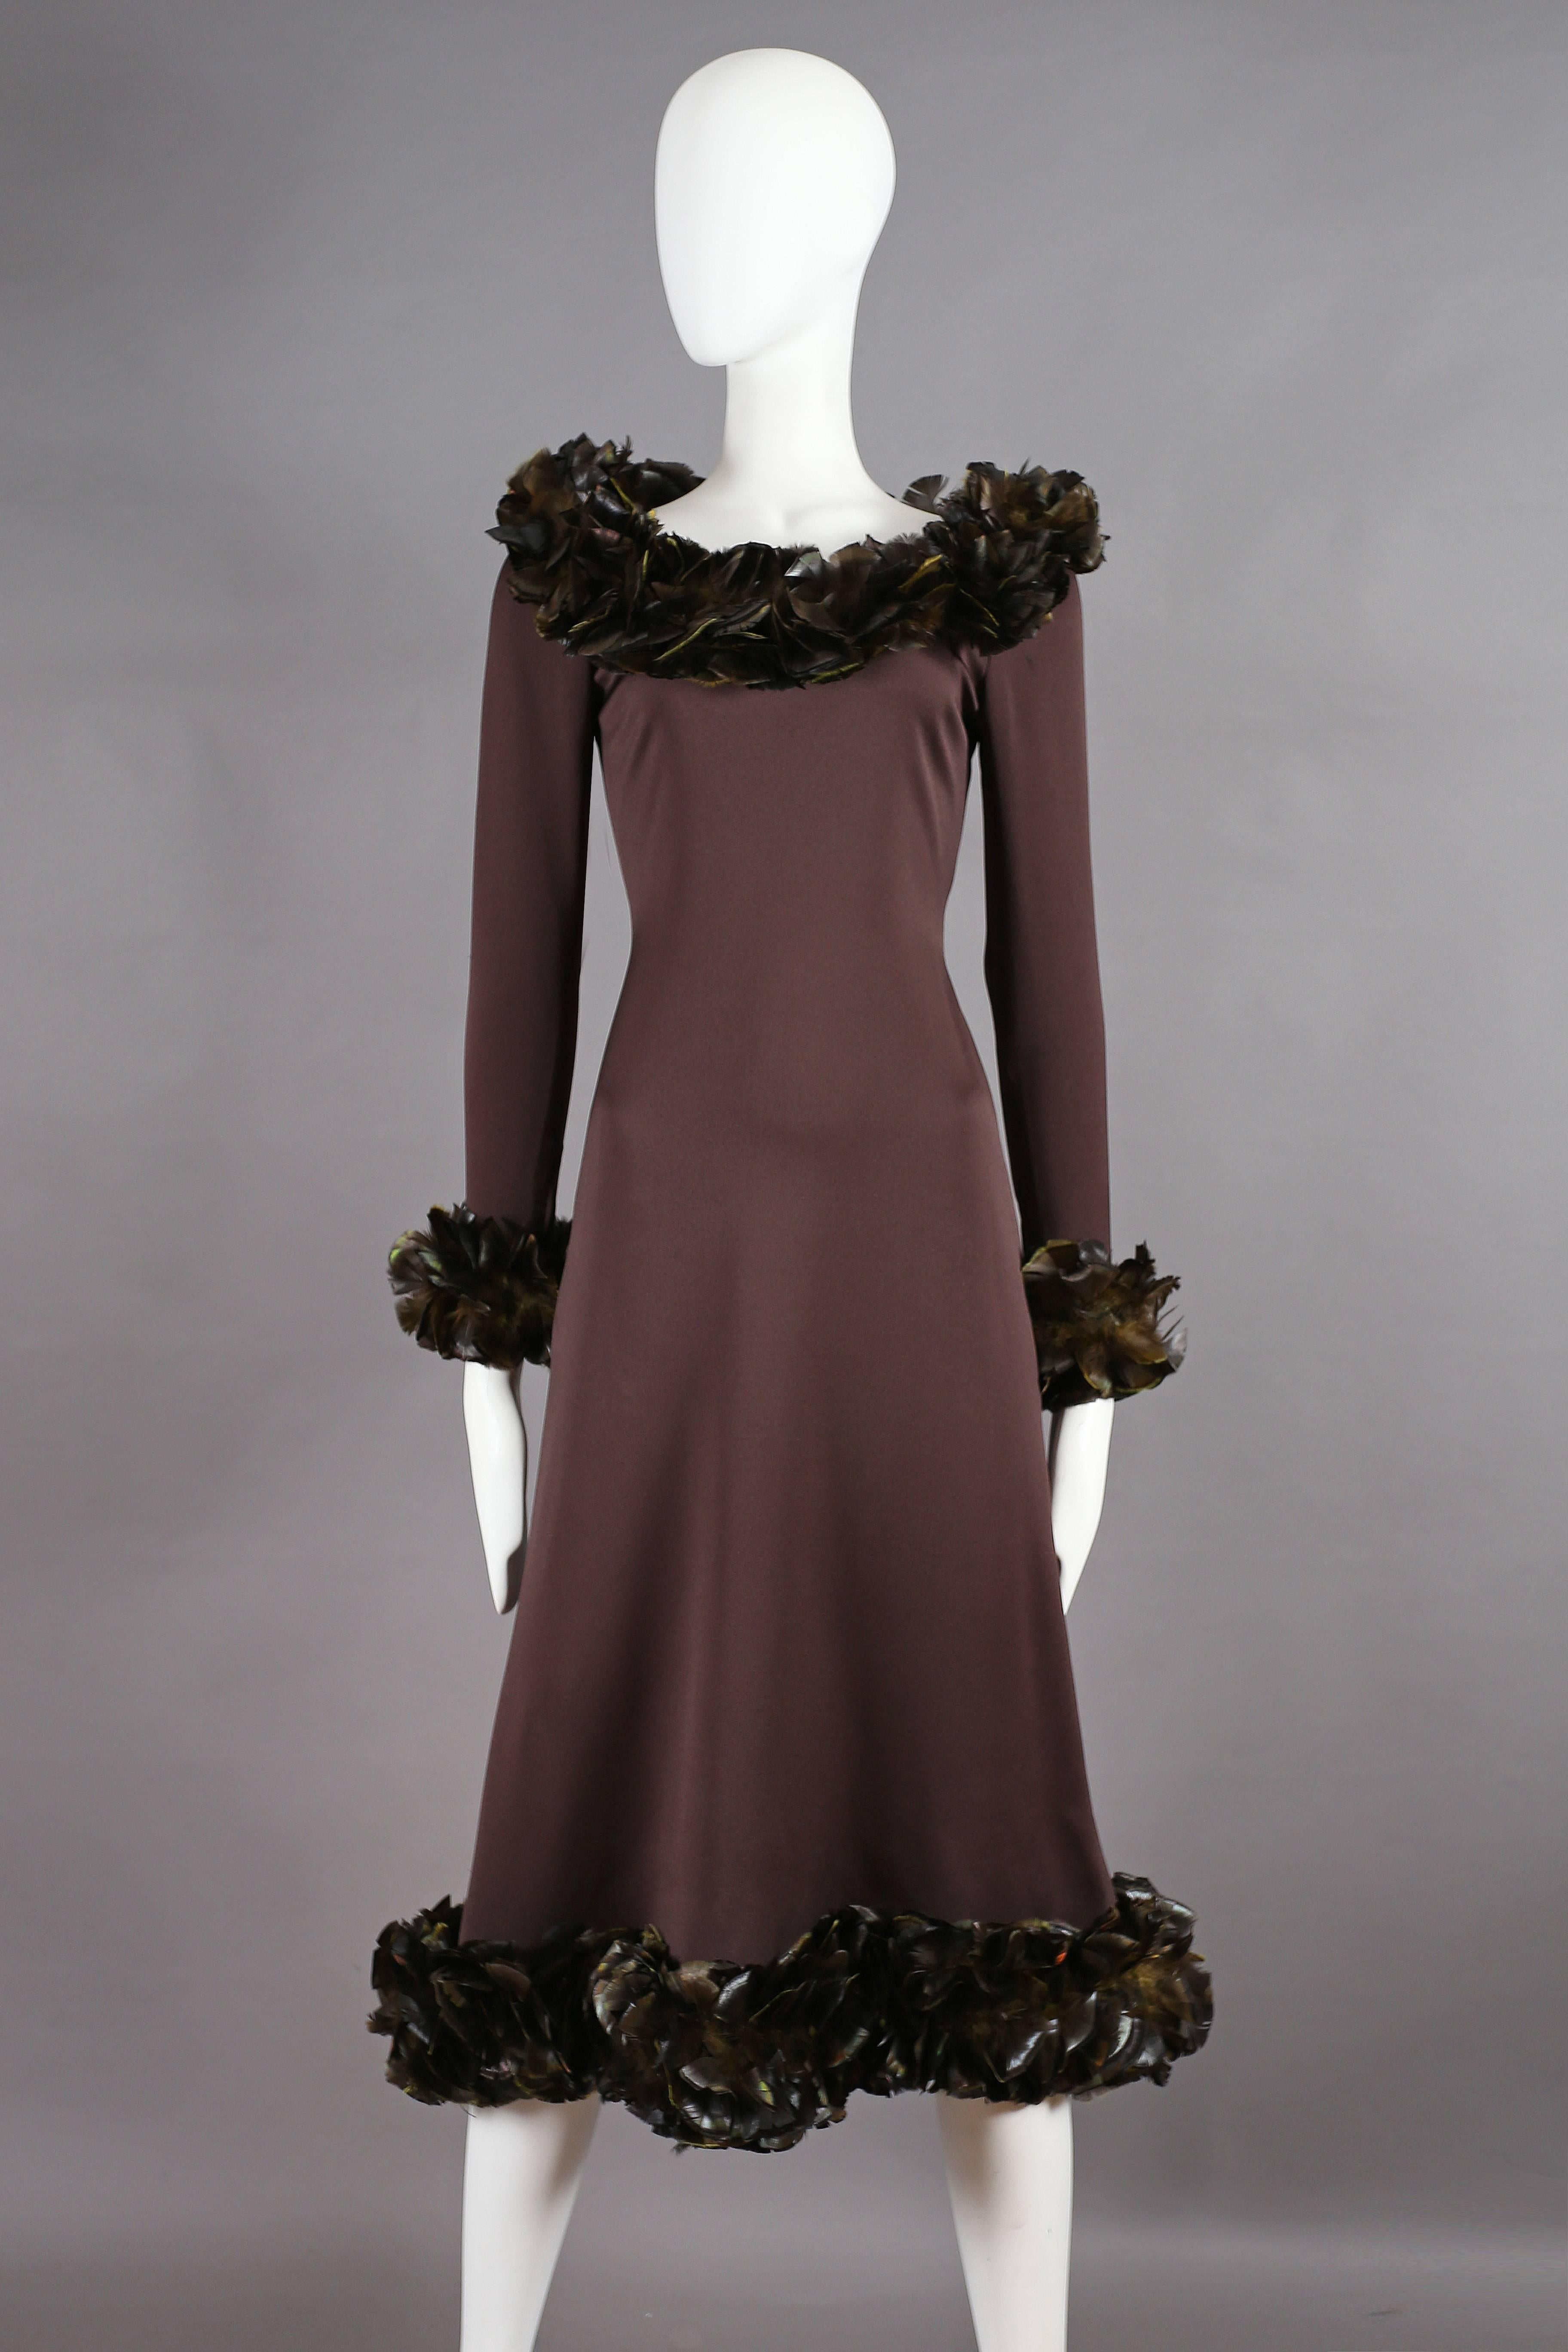 Nous présentons une exceptionnelle robe du soir Yves Saint Laurent Haute Couture de la collection automne-hiver 1969. Cette robe est un véritable chef-d'œuvre confectionné dans un luxueux crêpe de soie marron, qui respire l'élégance et la